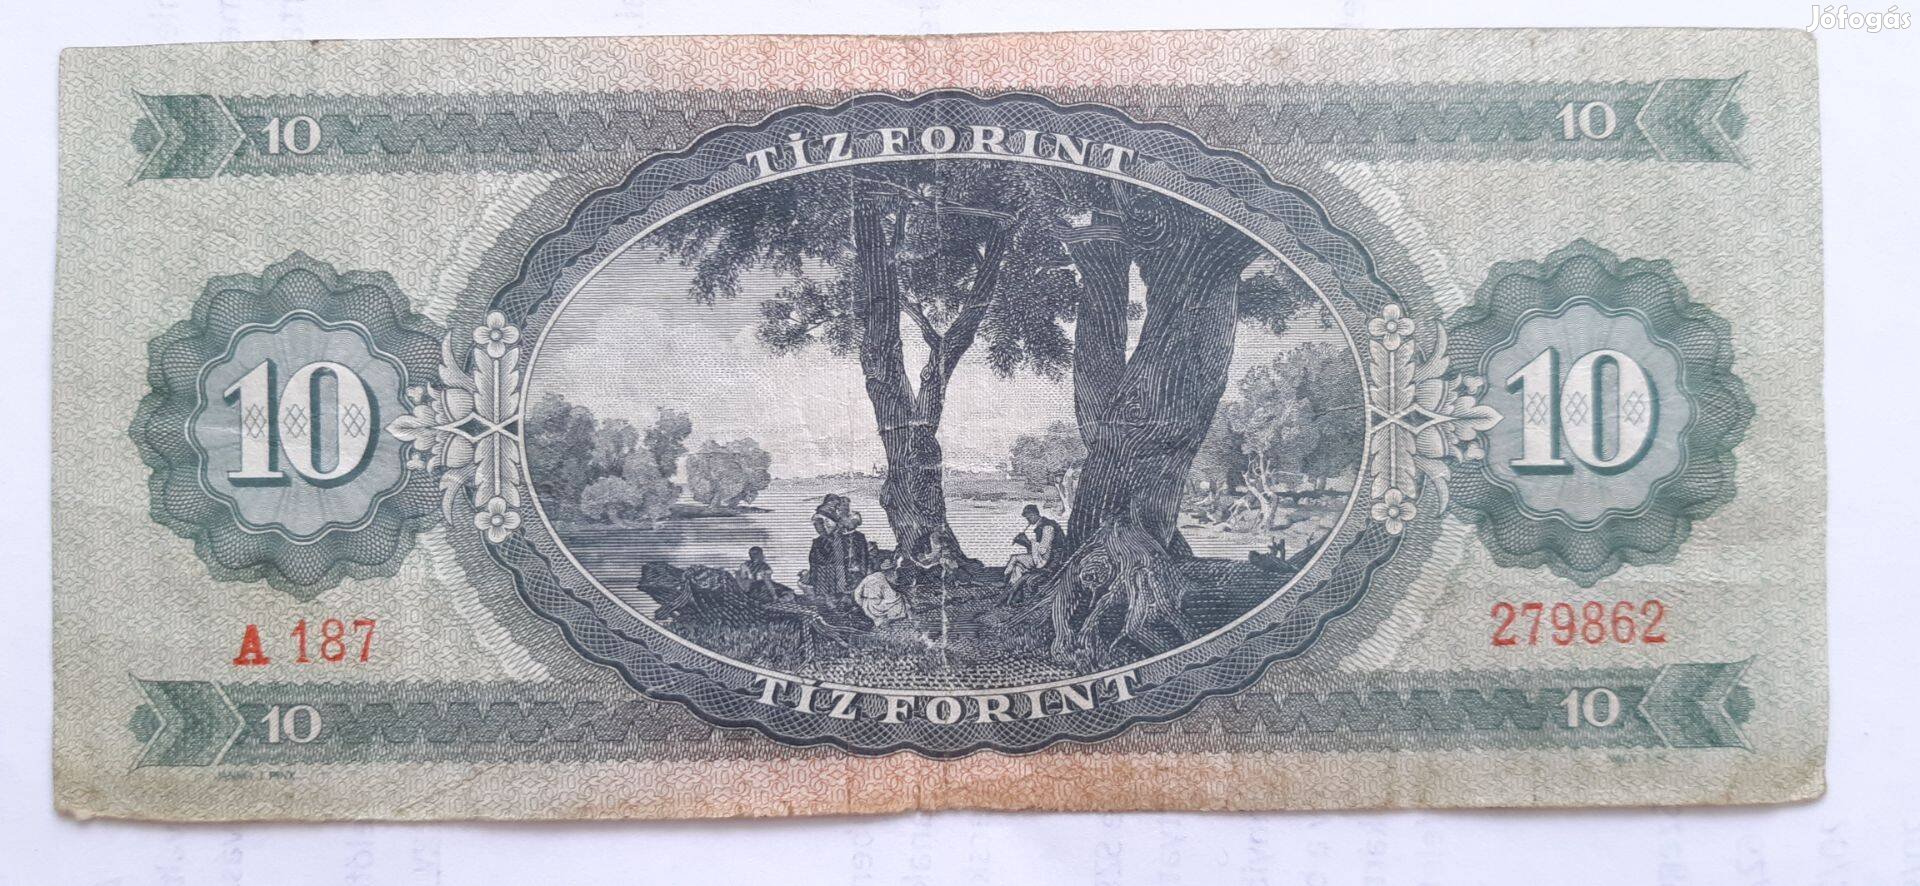 Tíz forintos papír bankjegy használt állapotban.1962 évjárat